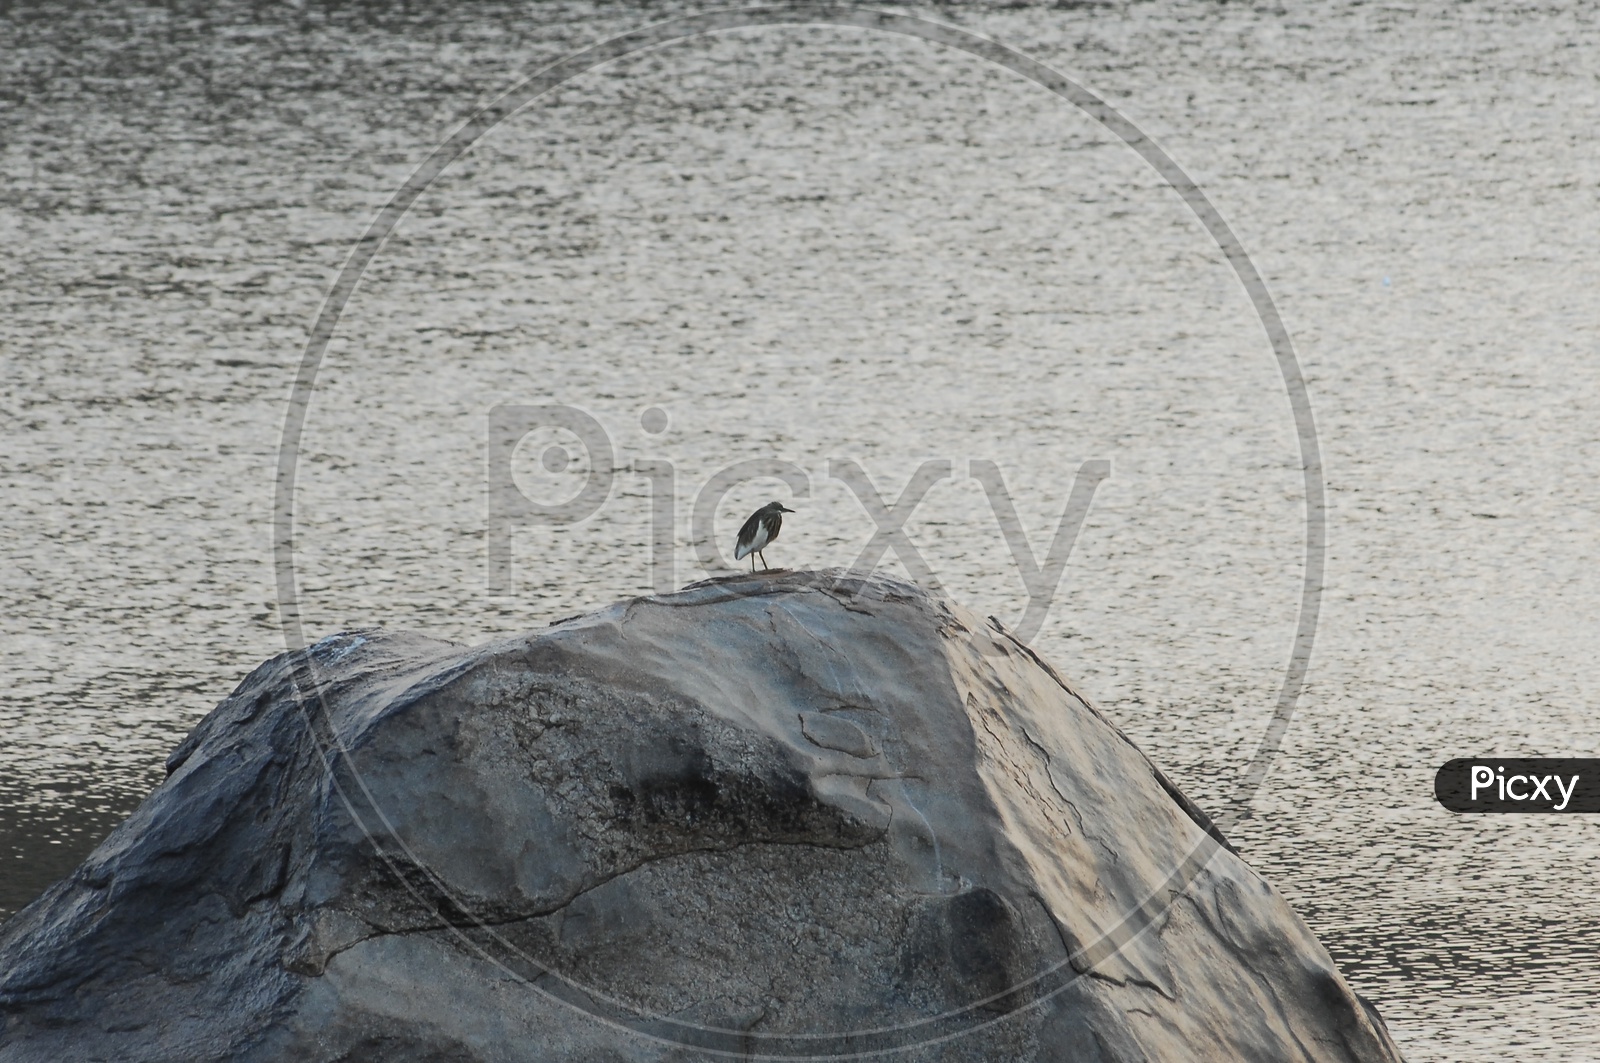 Heron on a rock near a lake